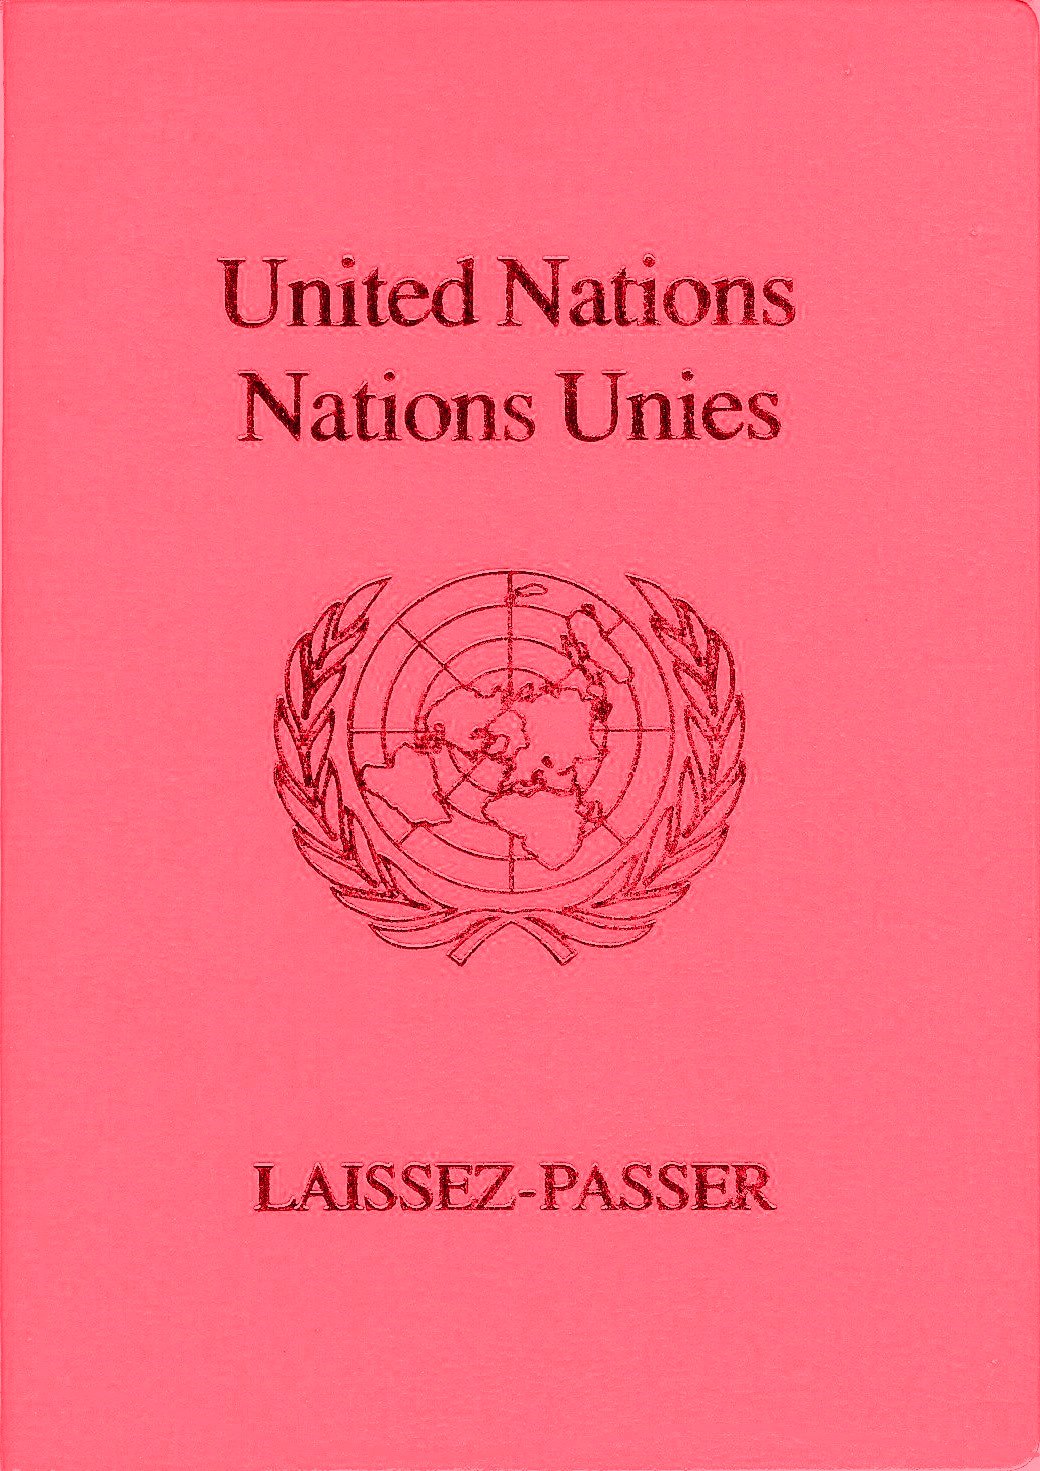 UN-laissez-passer_red